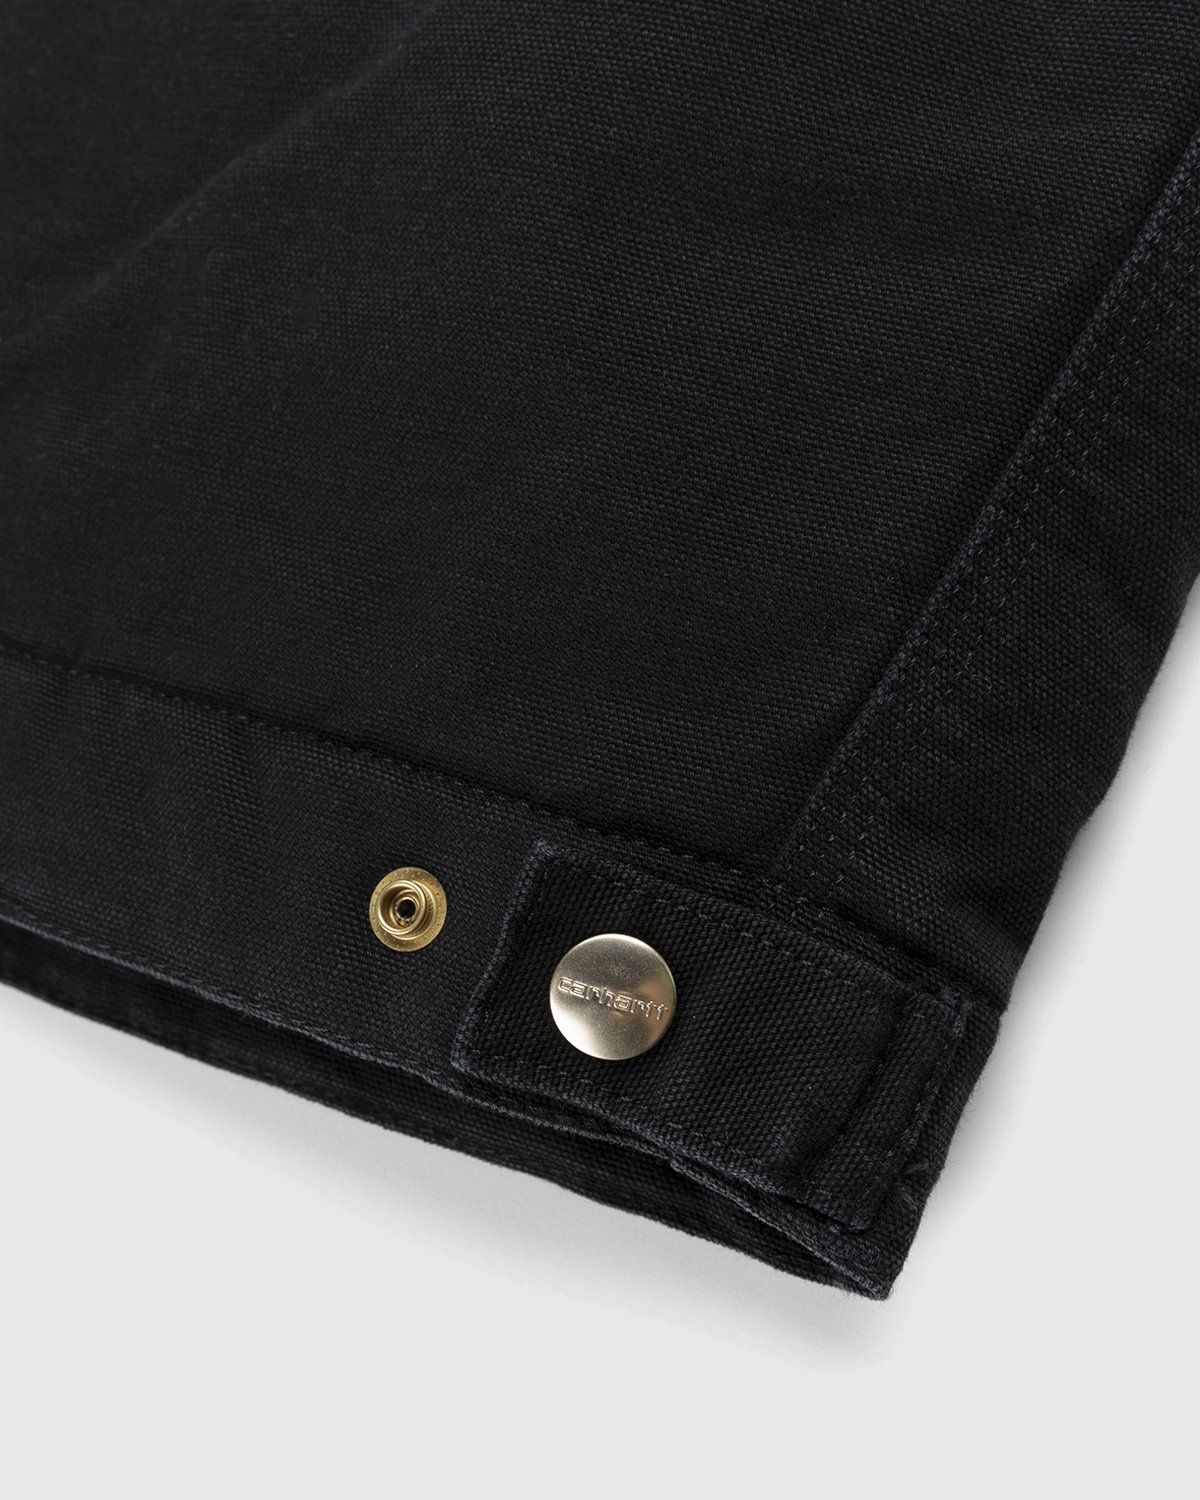 Carhartt WIP – OG Detroit Jacket Black - Outerwear - Black - Image 5